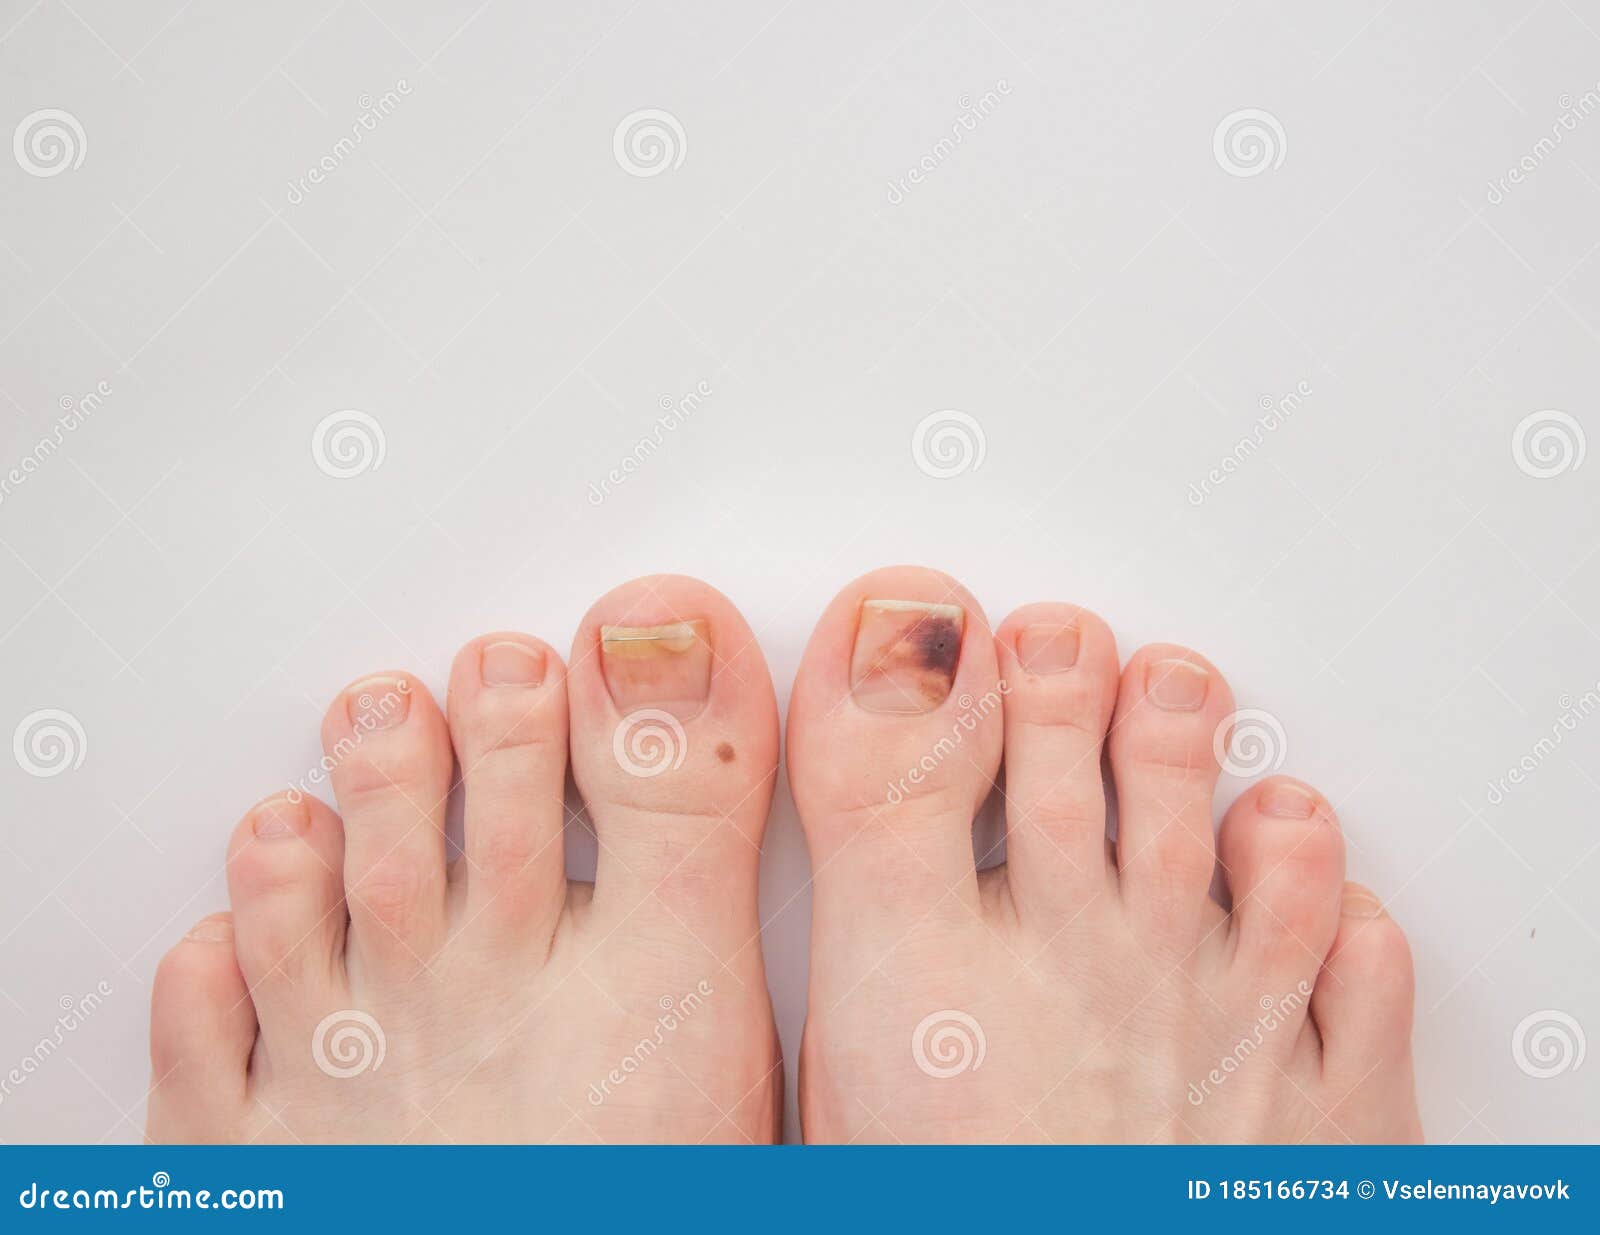 脚和长的钉子在白色具体背景用脚尖踢 库存照片. 图片 包括有 真菌, 皮肤, 手指, 关心, 背包, 传染 - 122569844